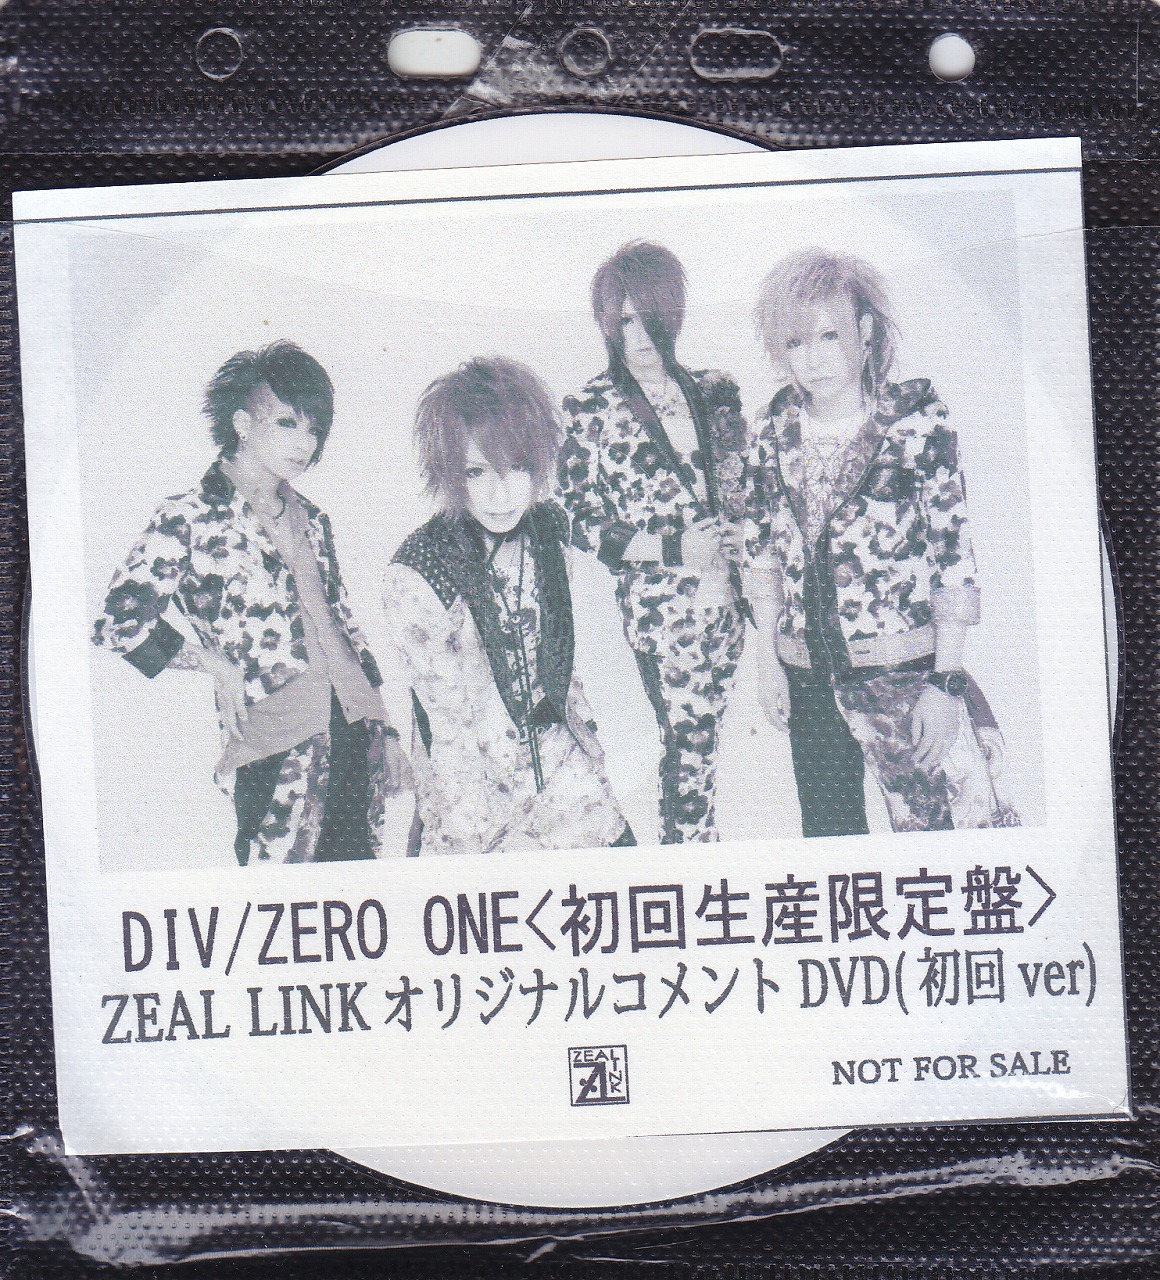 ダイブ の DVD 【ZEAL LINK】ZERO ONE<初回生産限定盤>オリジナルコメントDVD(初回 ver)